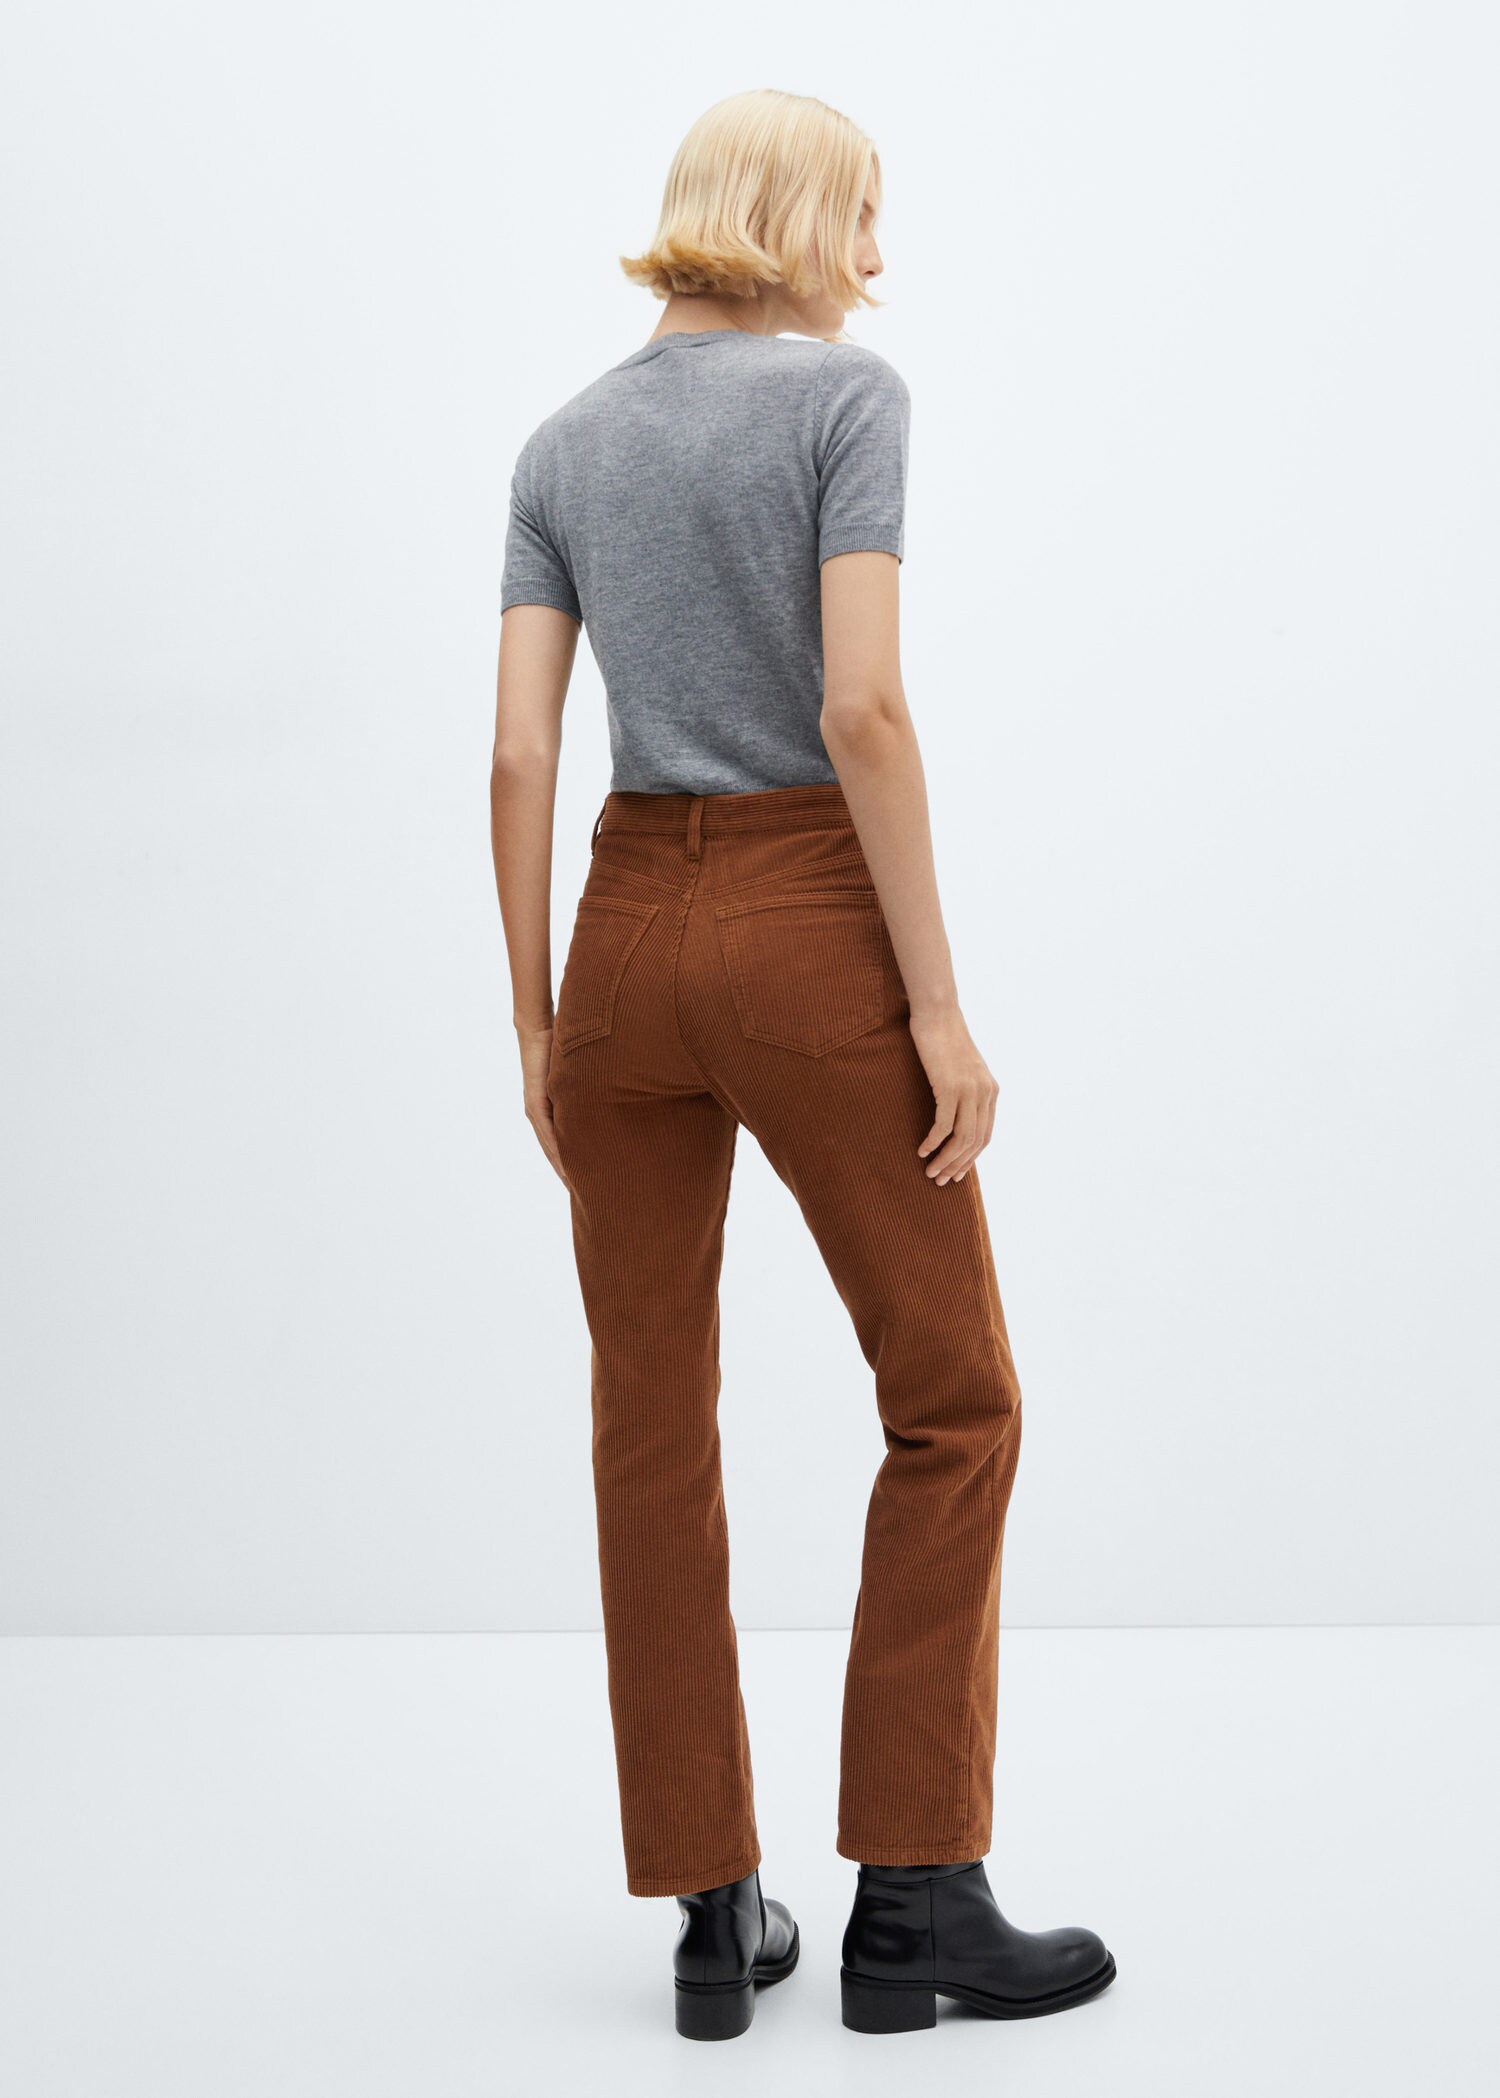 Slim-Cut Corduroy Pants By A.w.a.k.e. Mode | Moda Operandi | Corduroy pants  women, Corduroy pants, Corduroy pants outfit